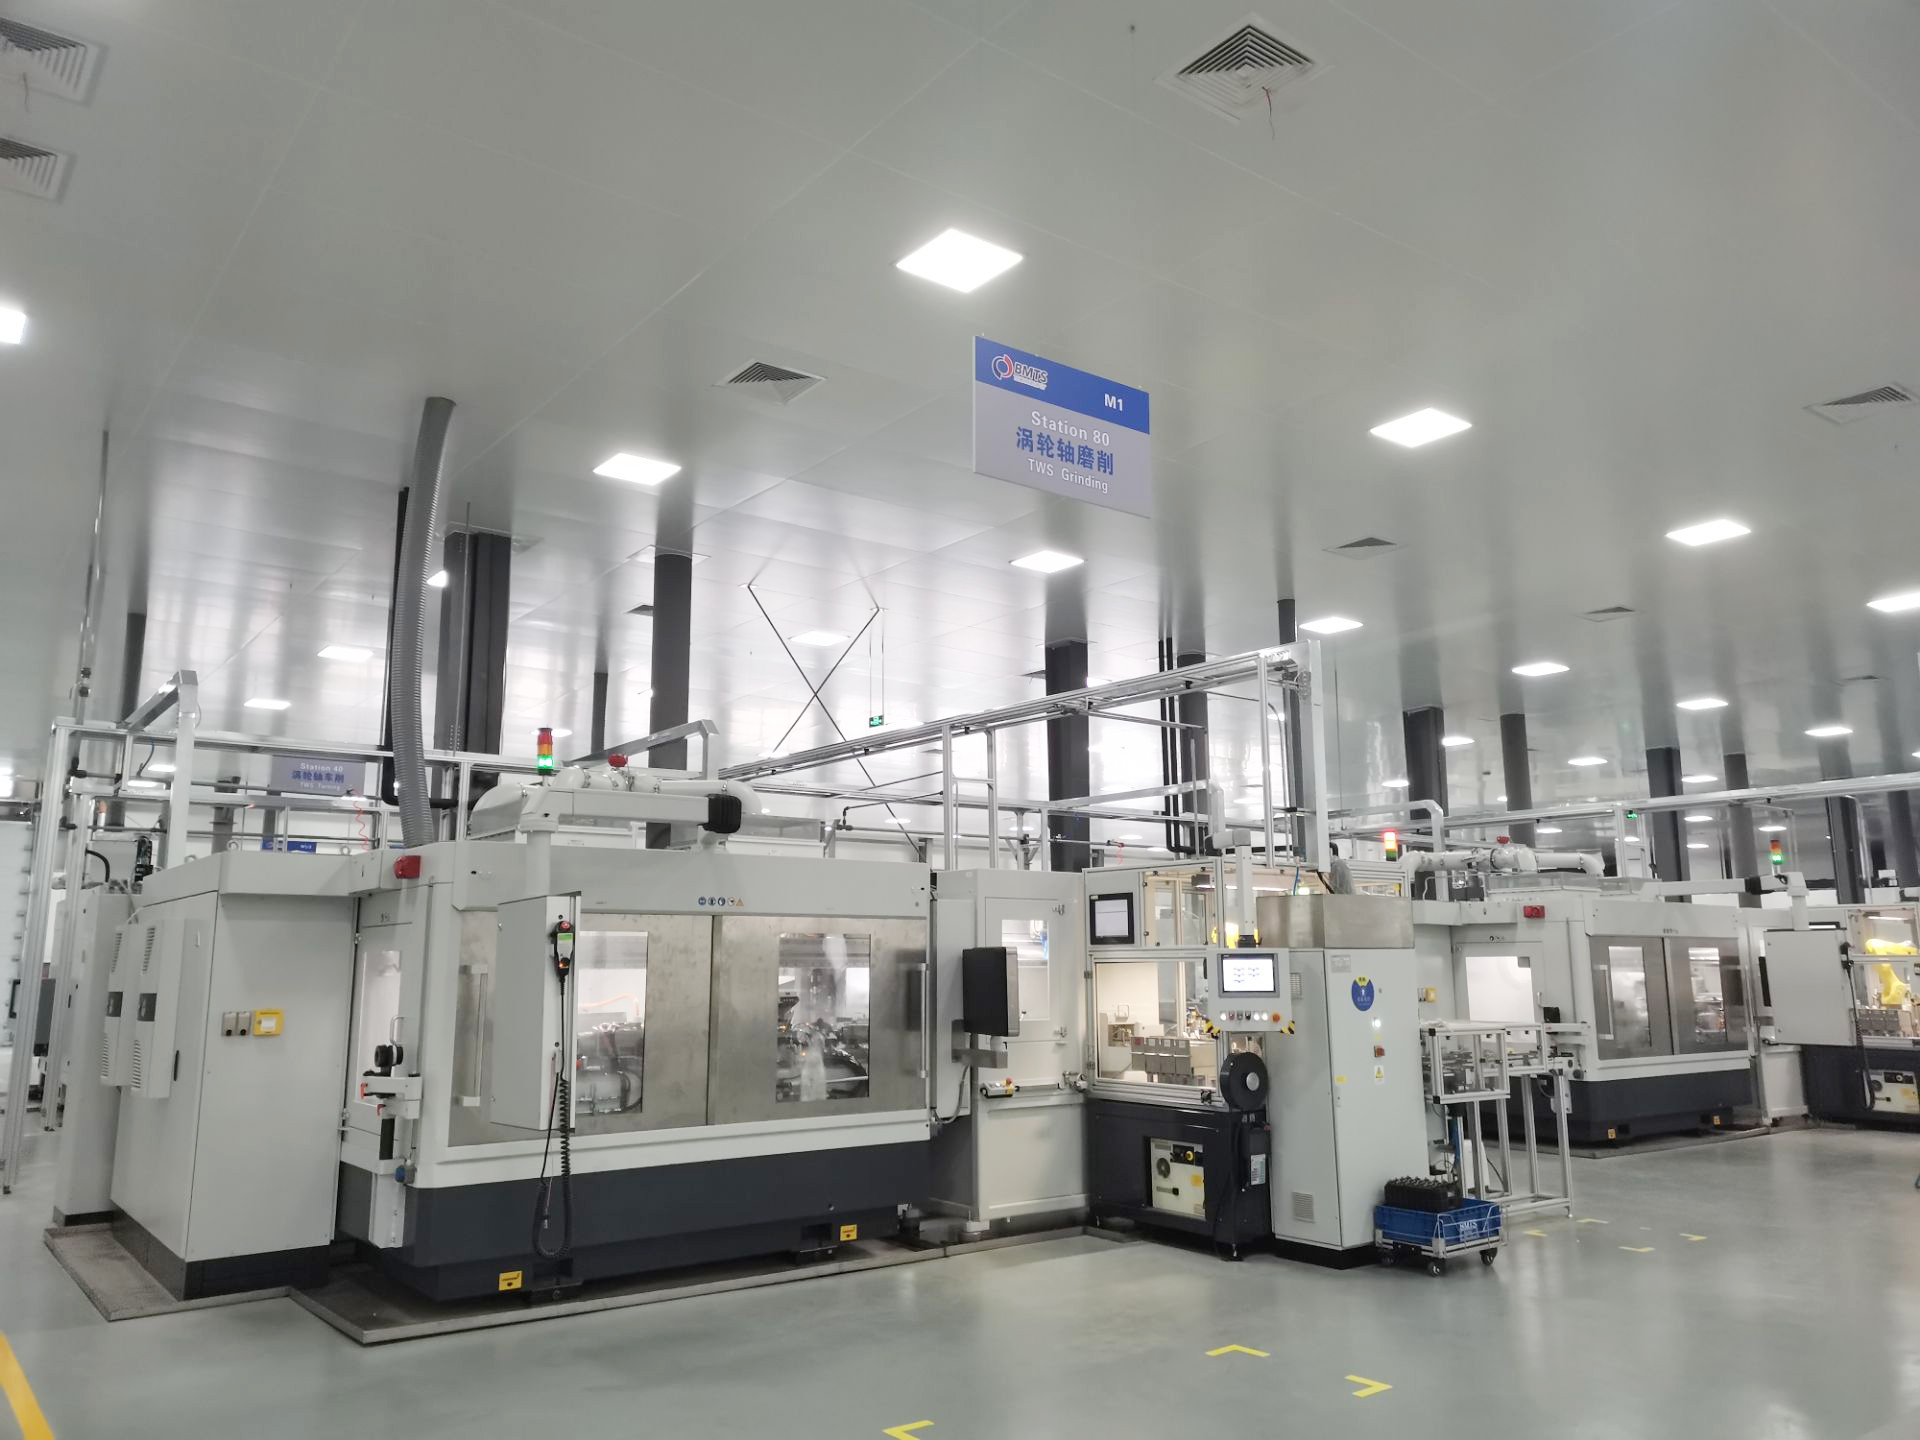 博马科技济南工厂按照德国工业4.0标准打造的涡轮轴生产线已经投产。